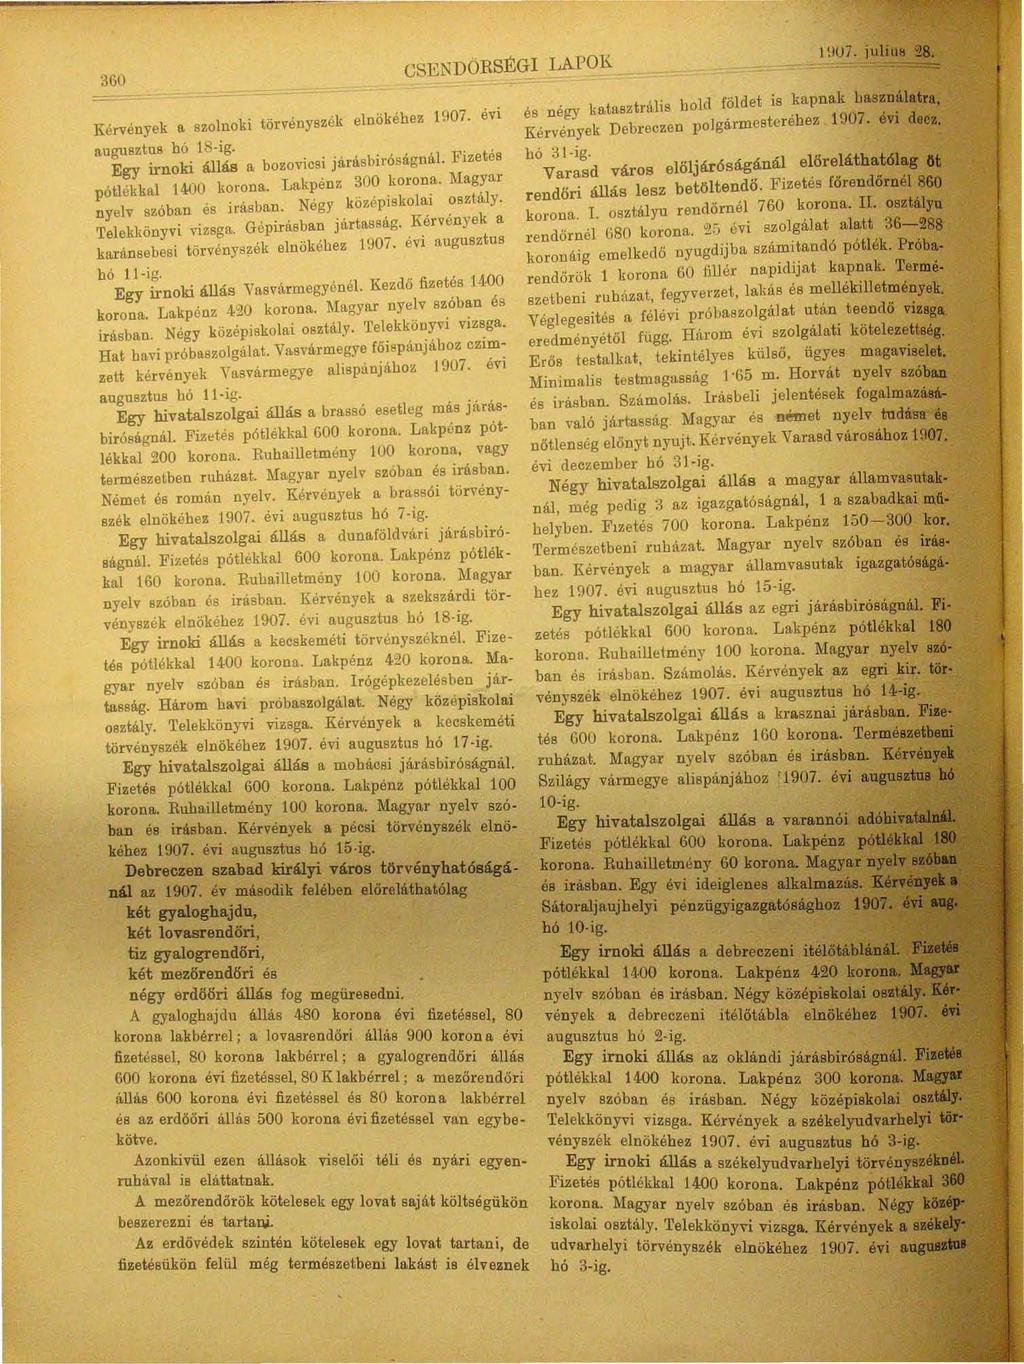 360 Kérvények a, szolnoki törvényszék elnökéhez 1907. évi augusztus bó ls ig. Egy irnoki állás a bozovicsi járásbiróságnál. Fizetés pótlékkal 1400 Iwrona. Lakpénz 300 korona.